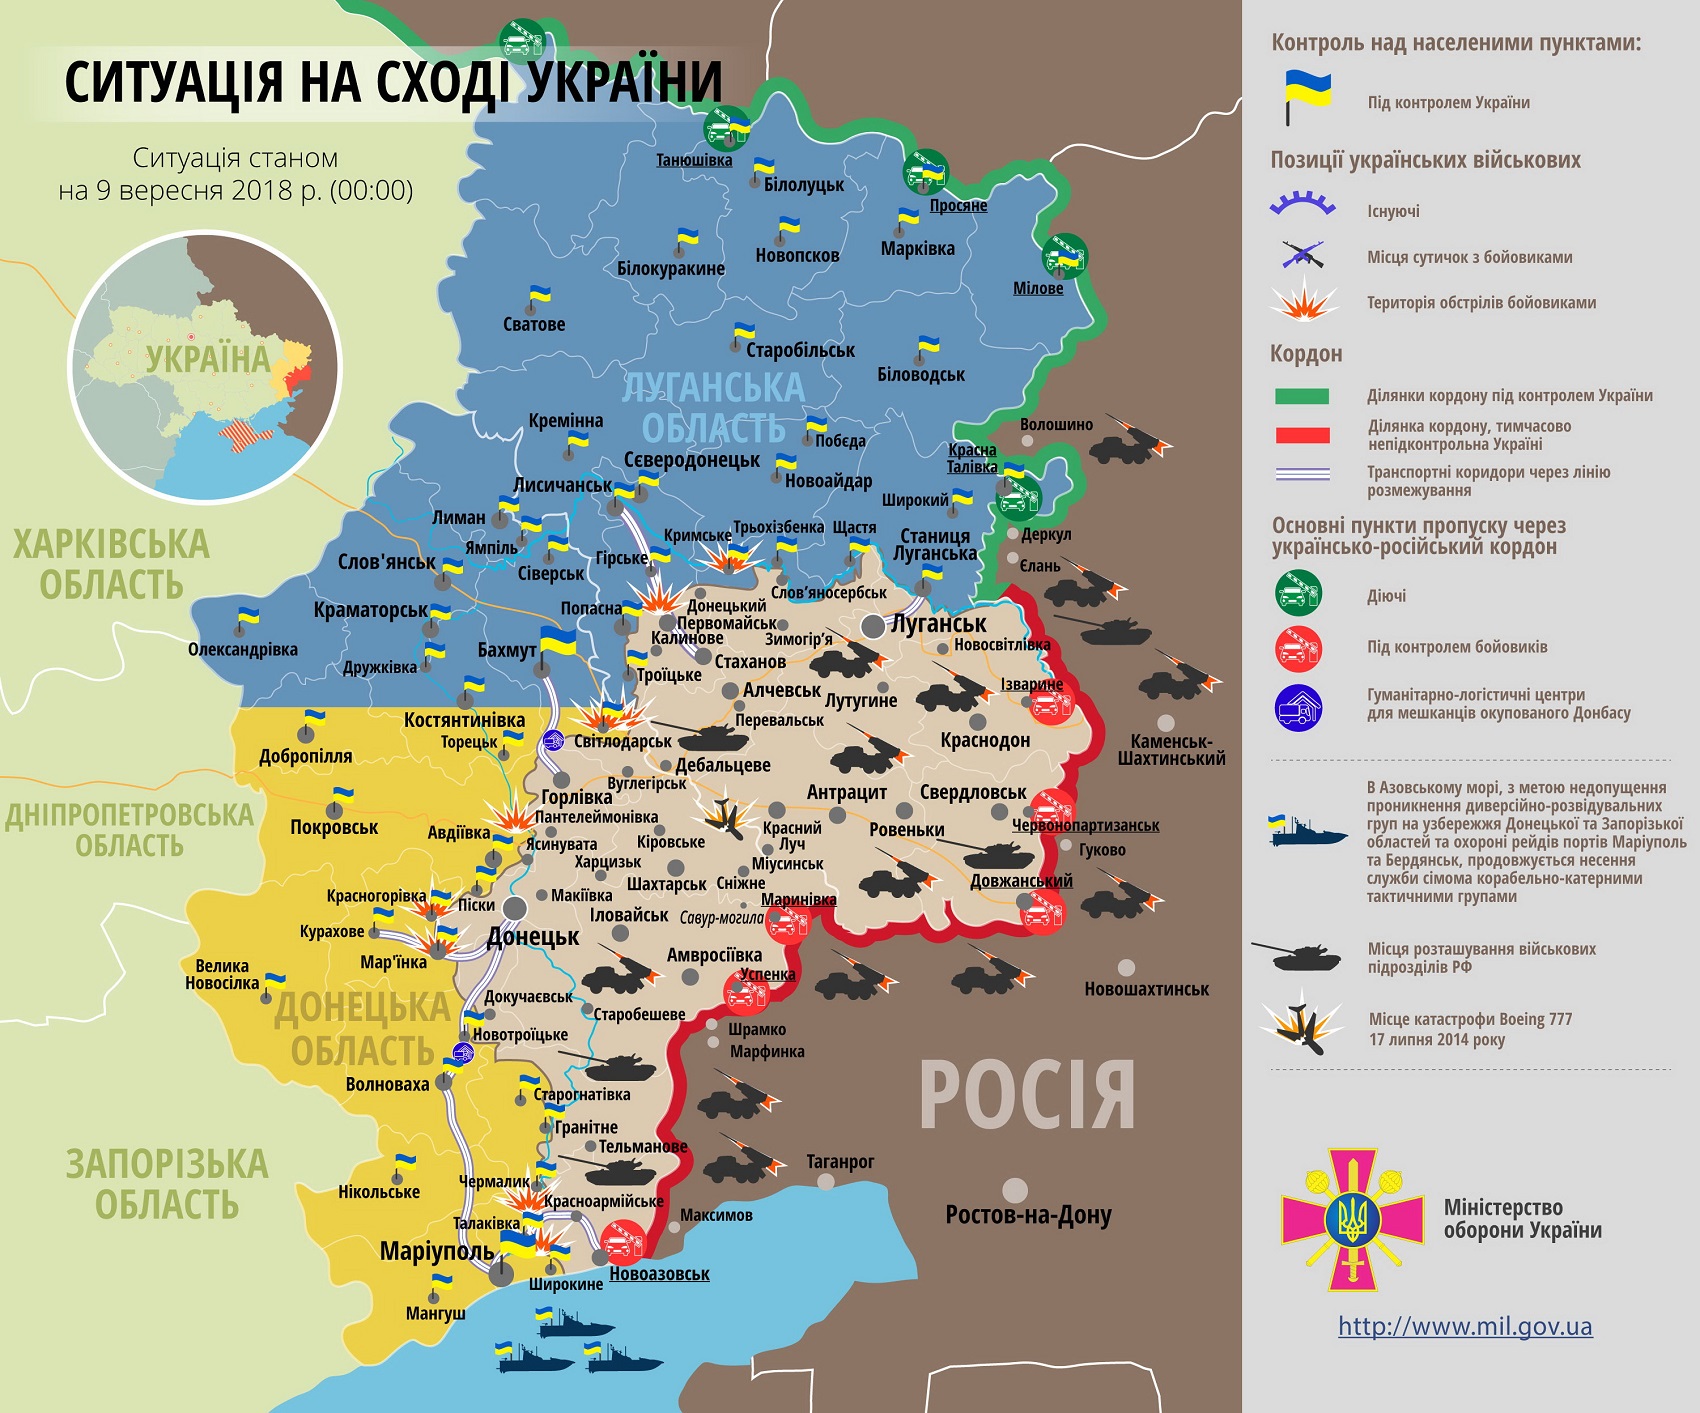 Боевики считают убитых после атак на ВСУ под Луганском и Донецком: боевая сводка и карта ООС от 9 сентября